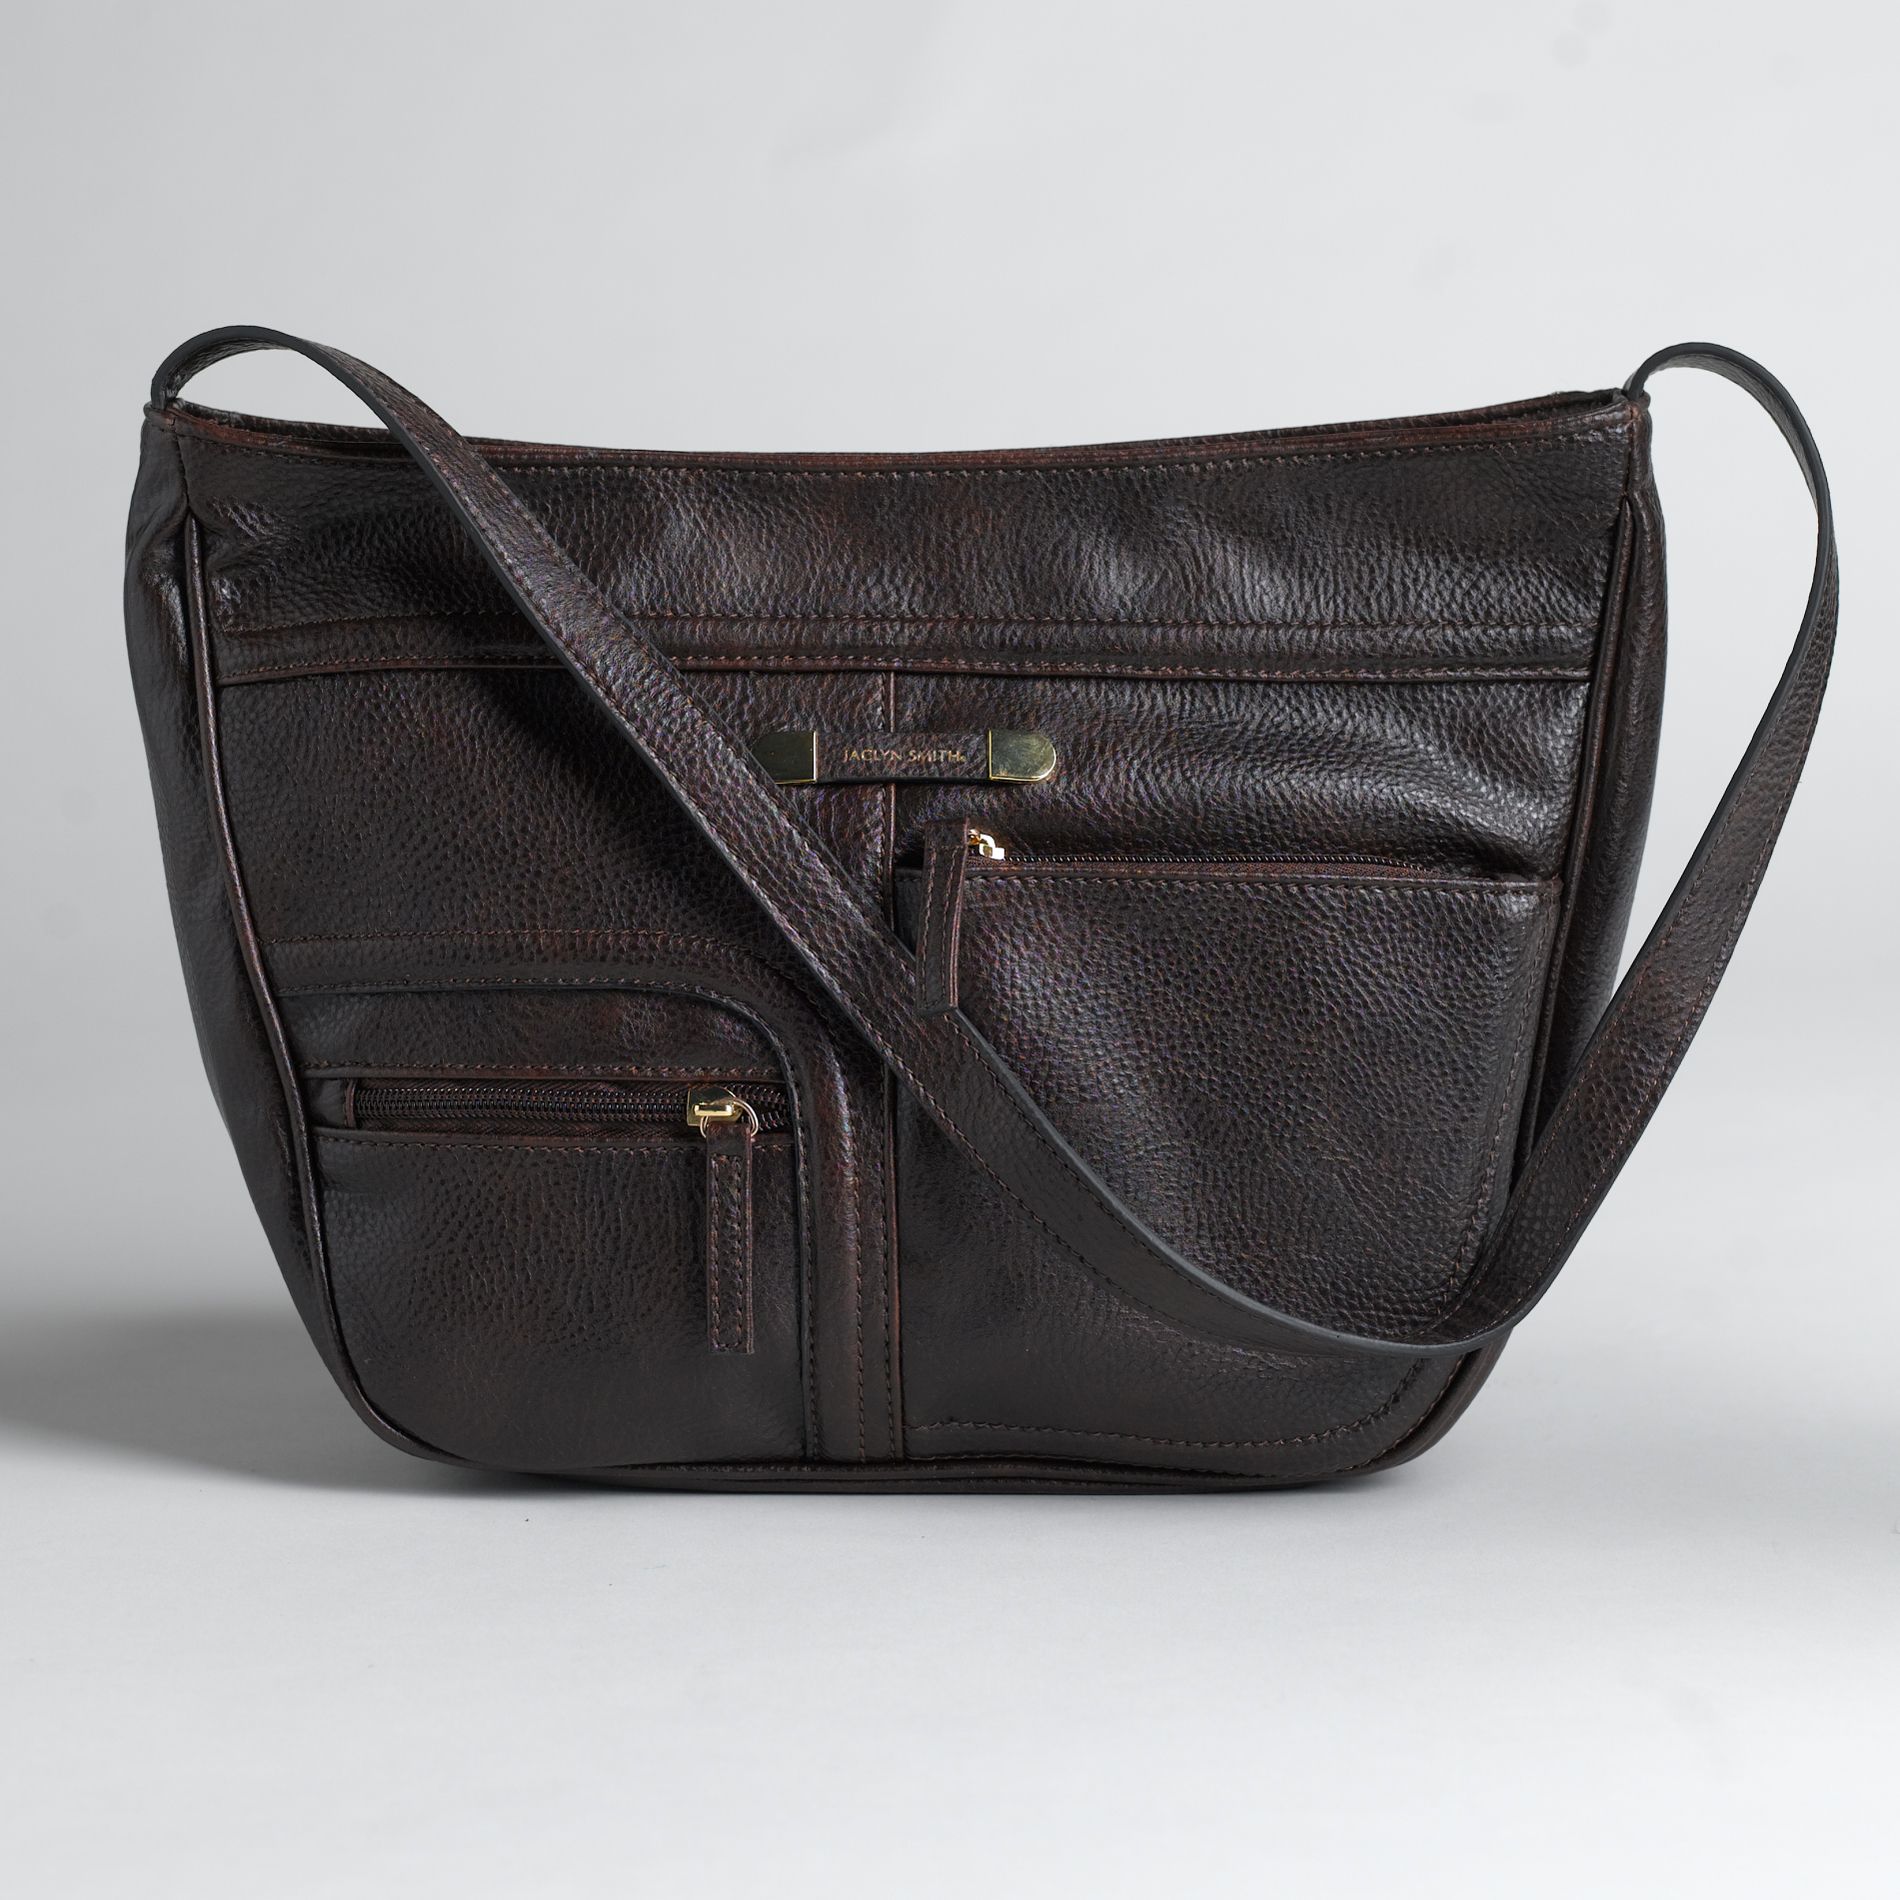 Jaclyn Smith Women's Hobo Style Handbag